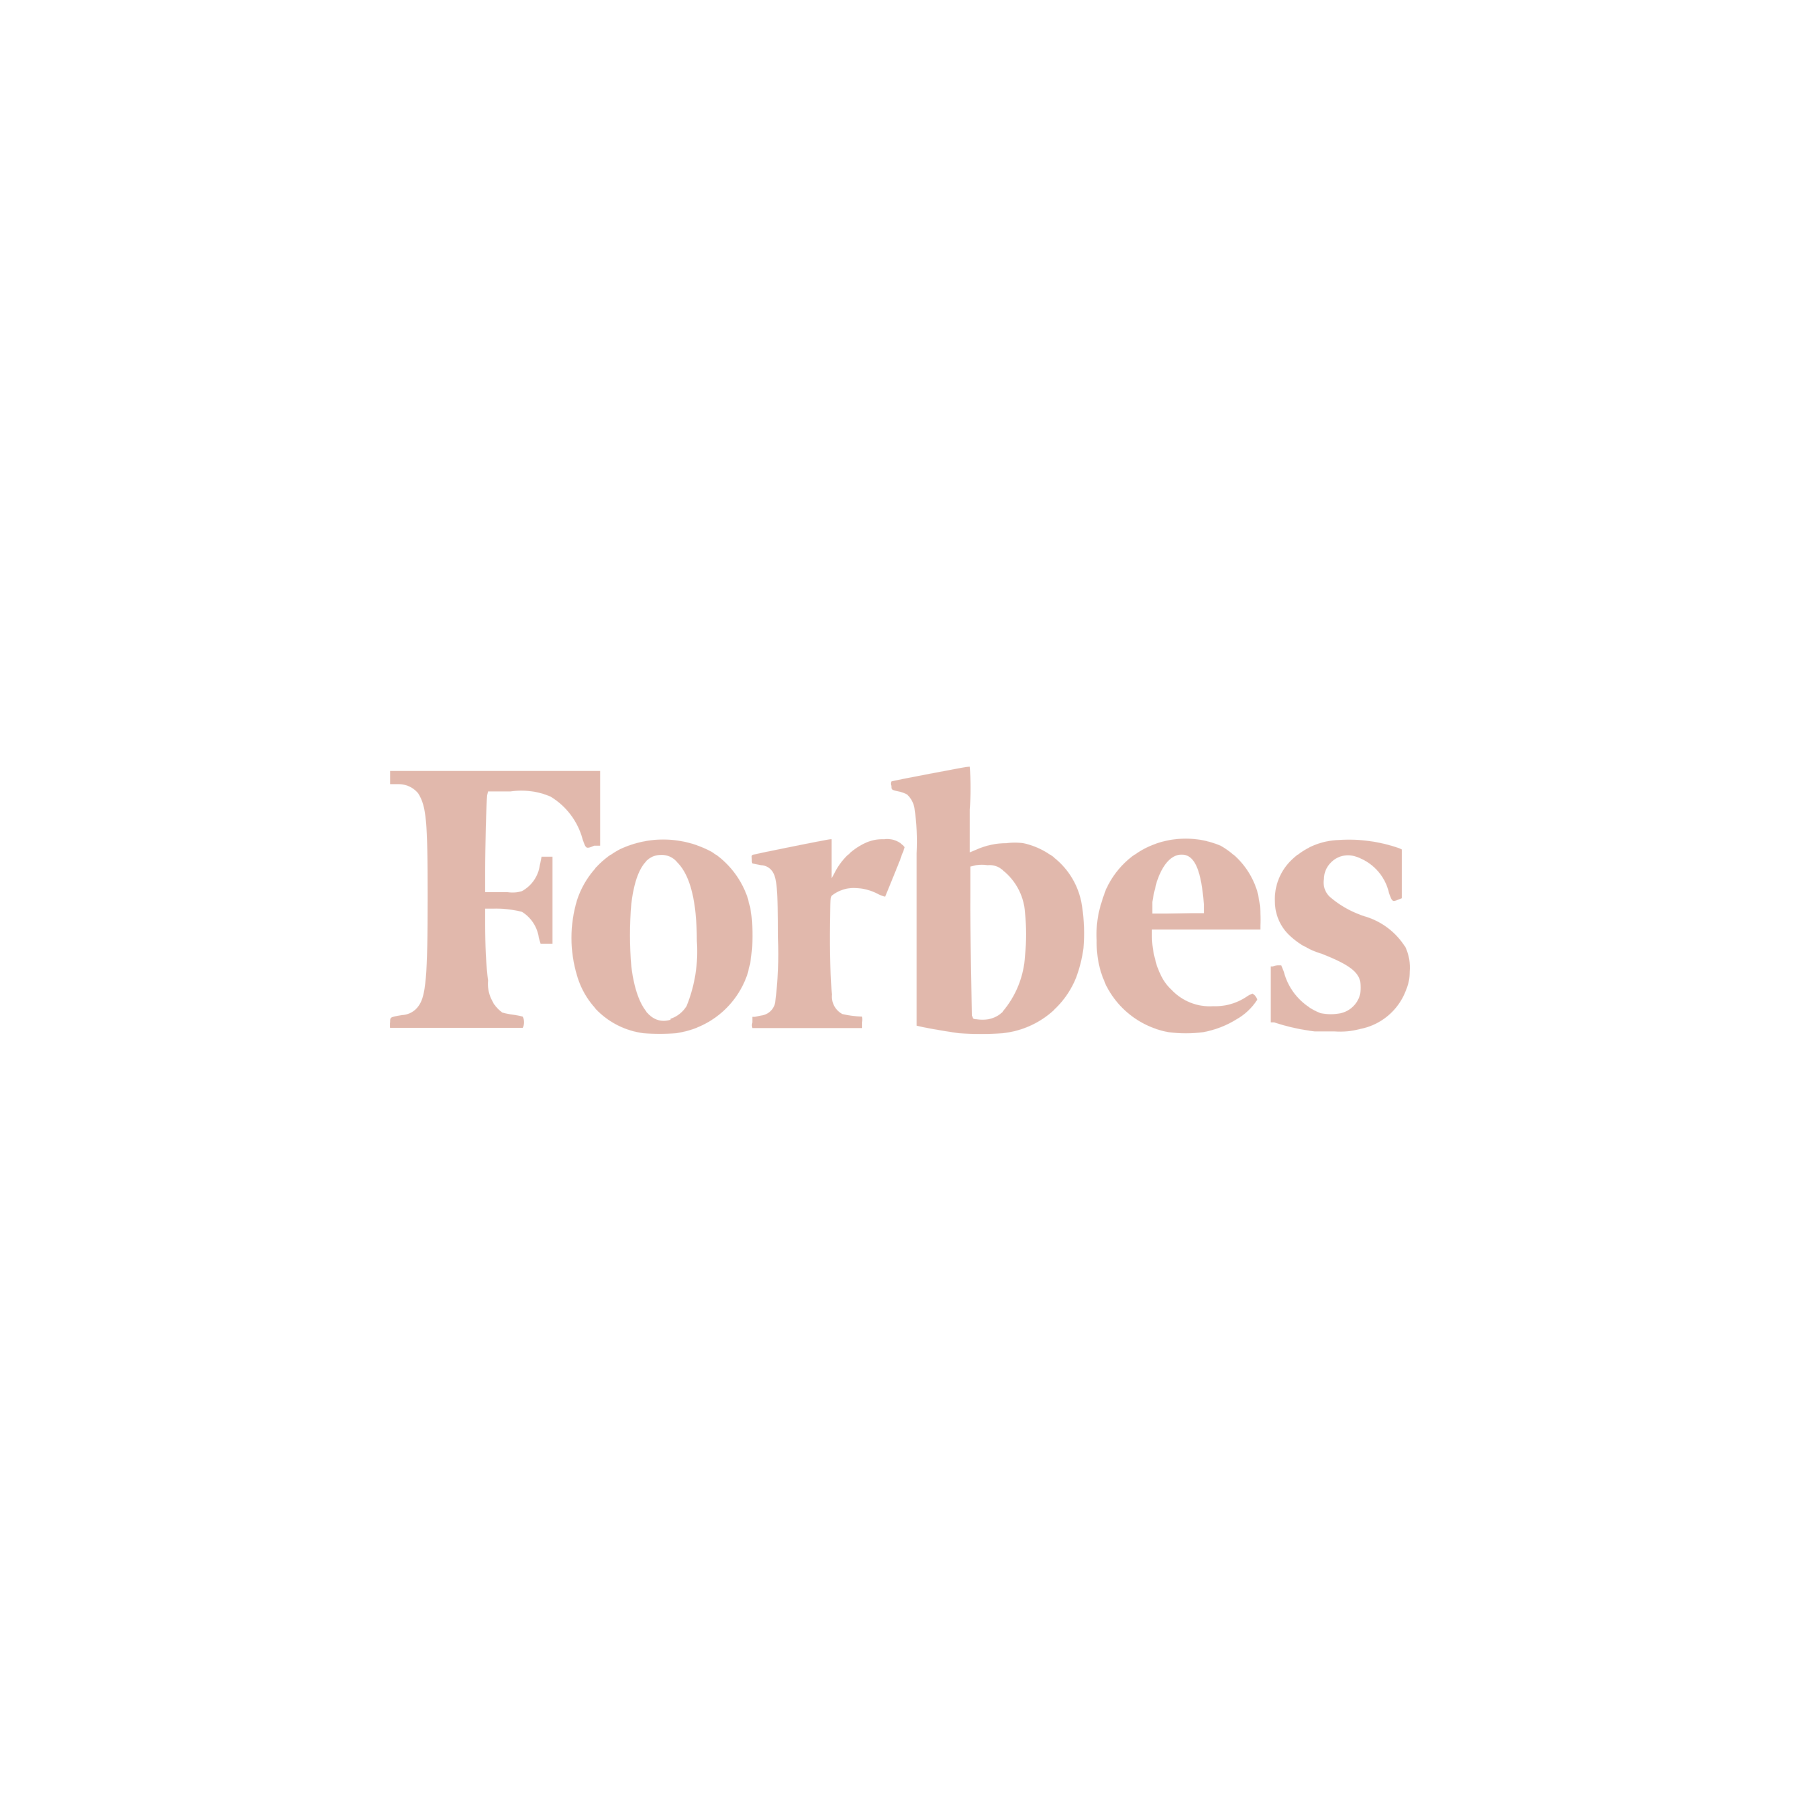 Flrrish on Forbes  (Copy)